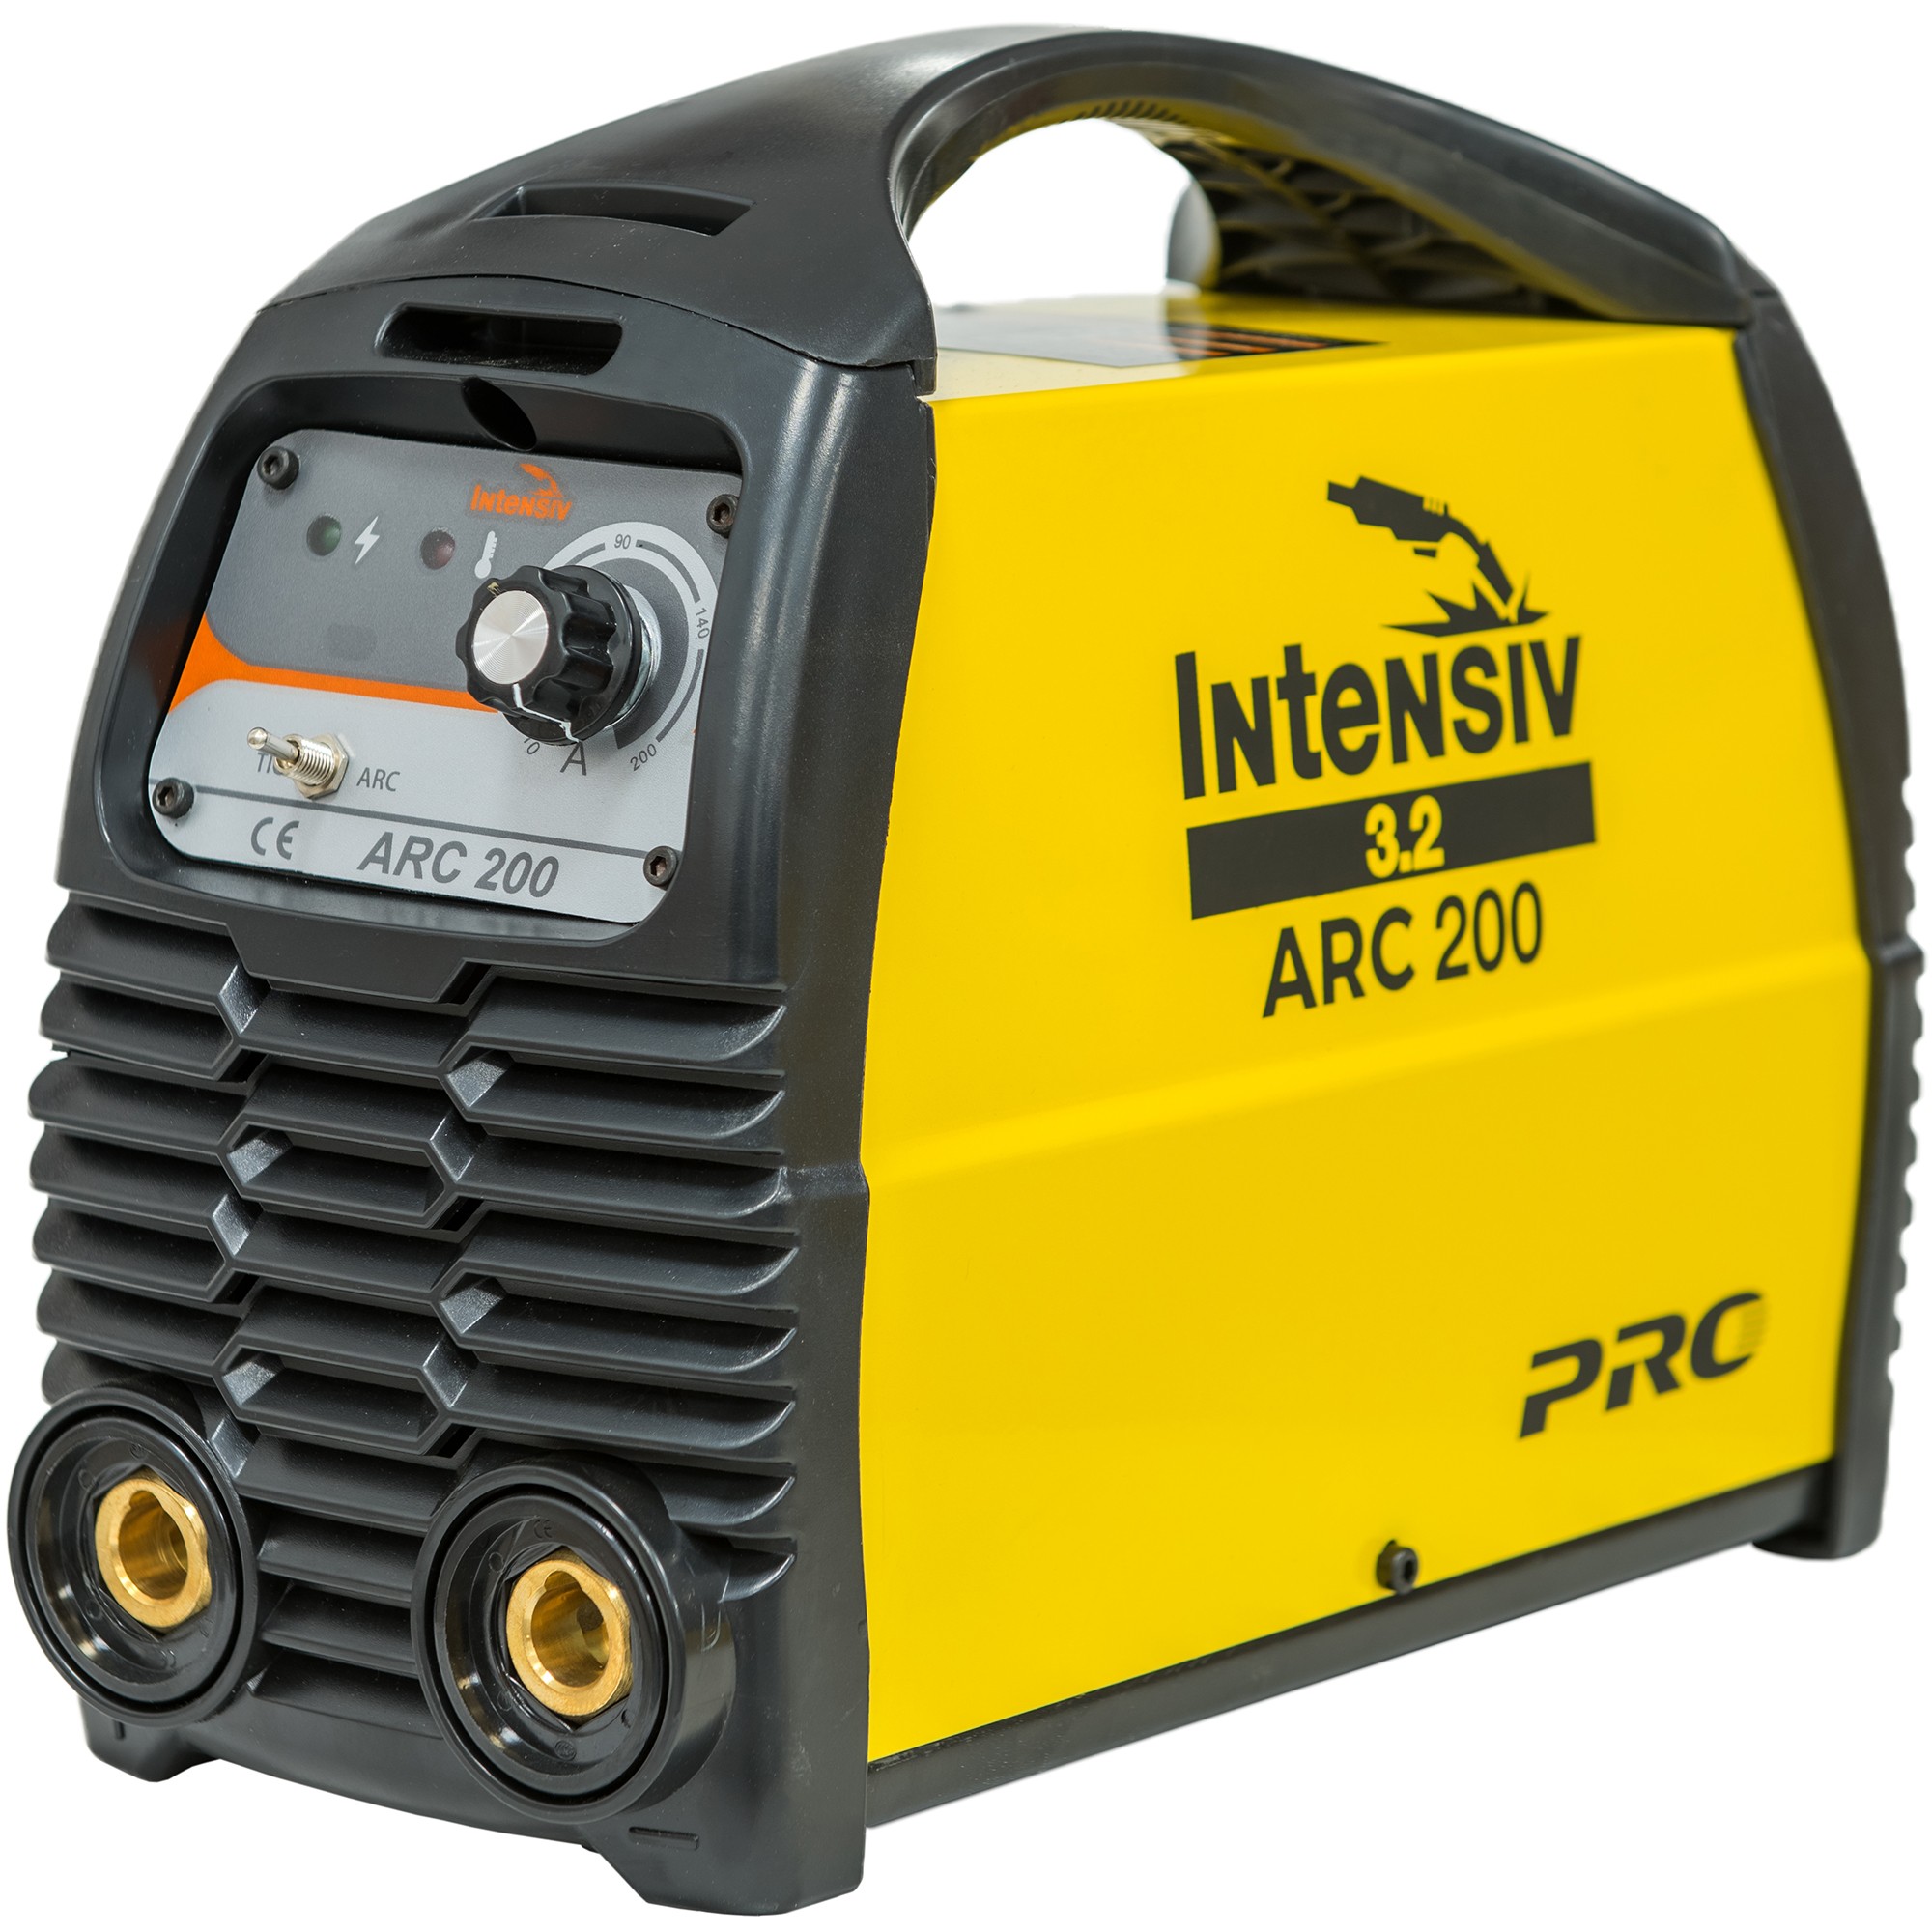 Intensiv ARC 200 VRD – Aparat de sudura invertor Intensiv 200 imagine noua tecomm.ro